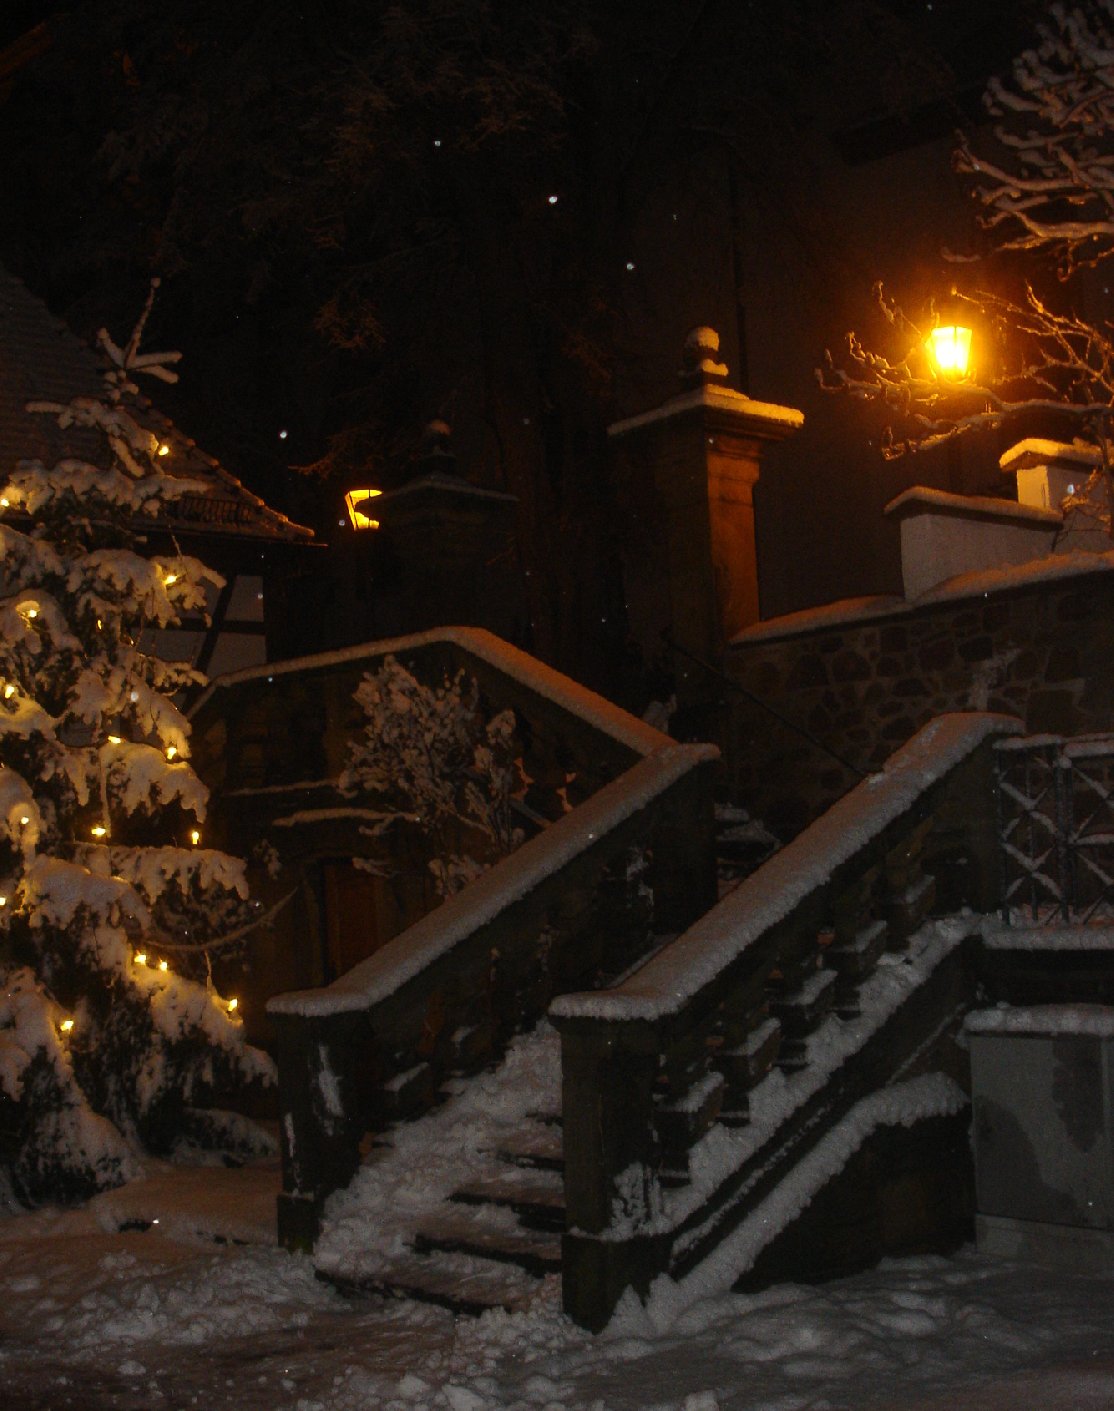 Pfarrkirche Sankt Michael im Schnee: Dieses Jahr eher nicht zu erwarten.